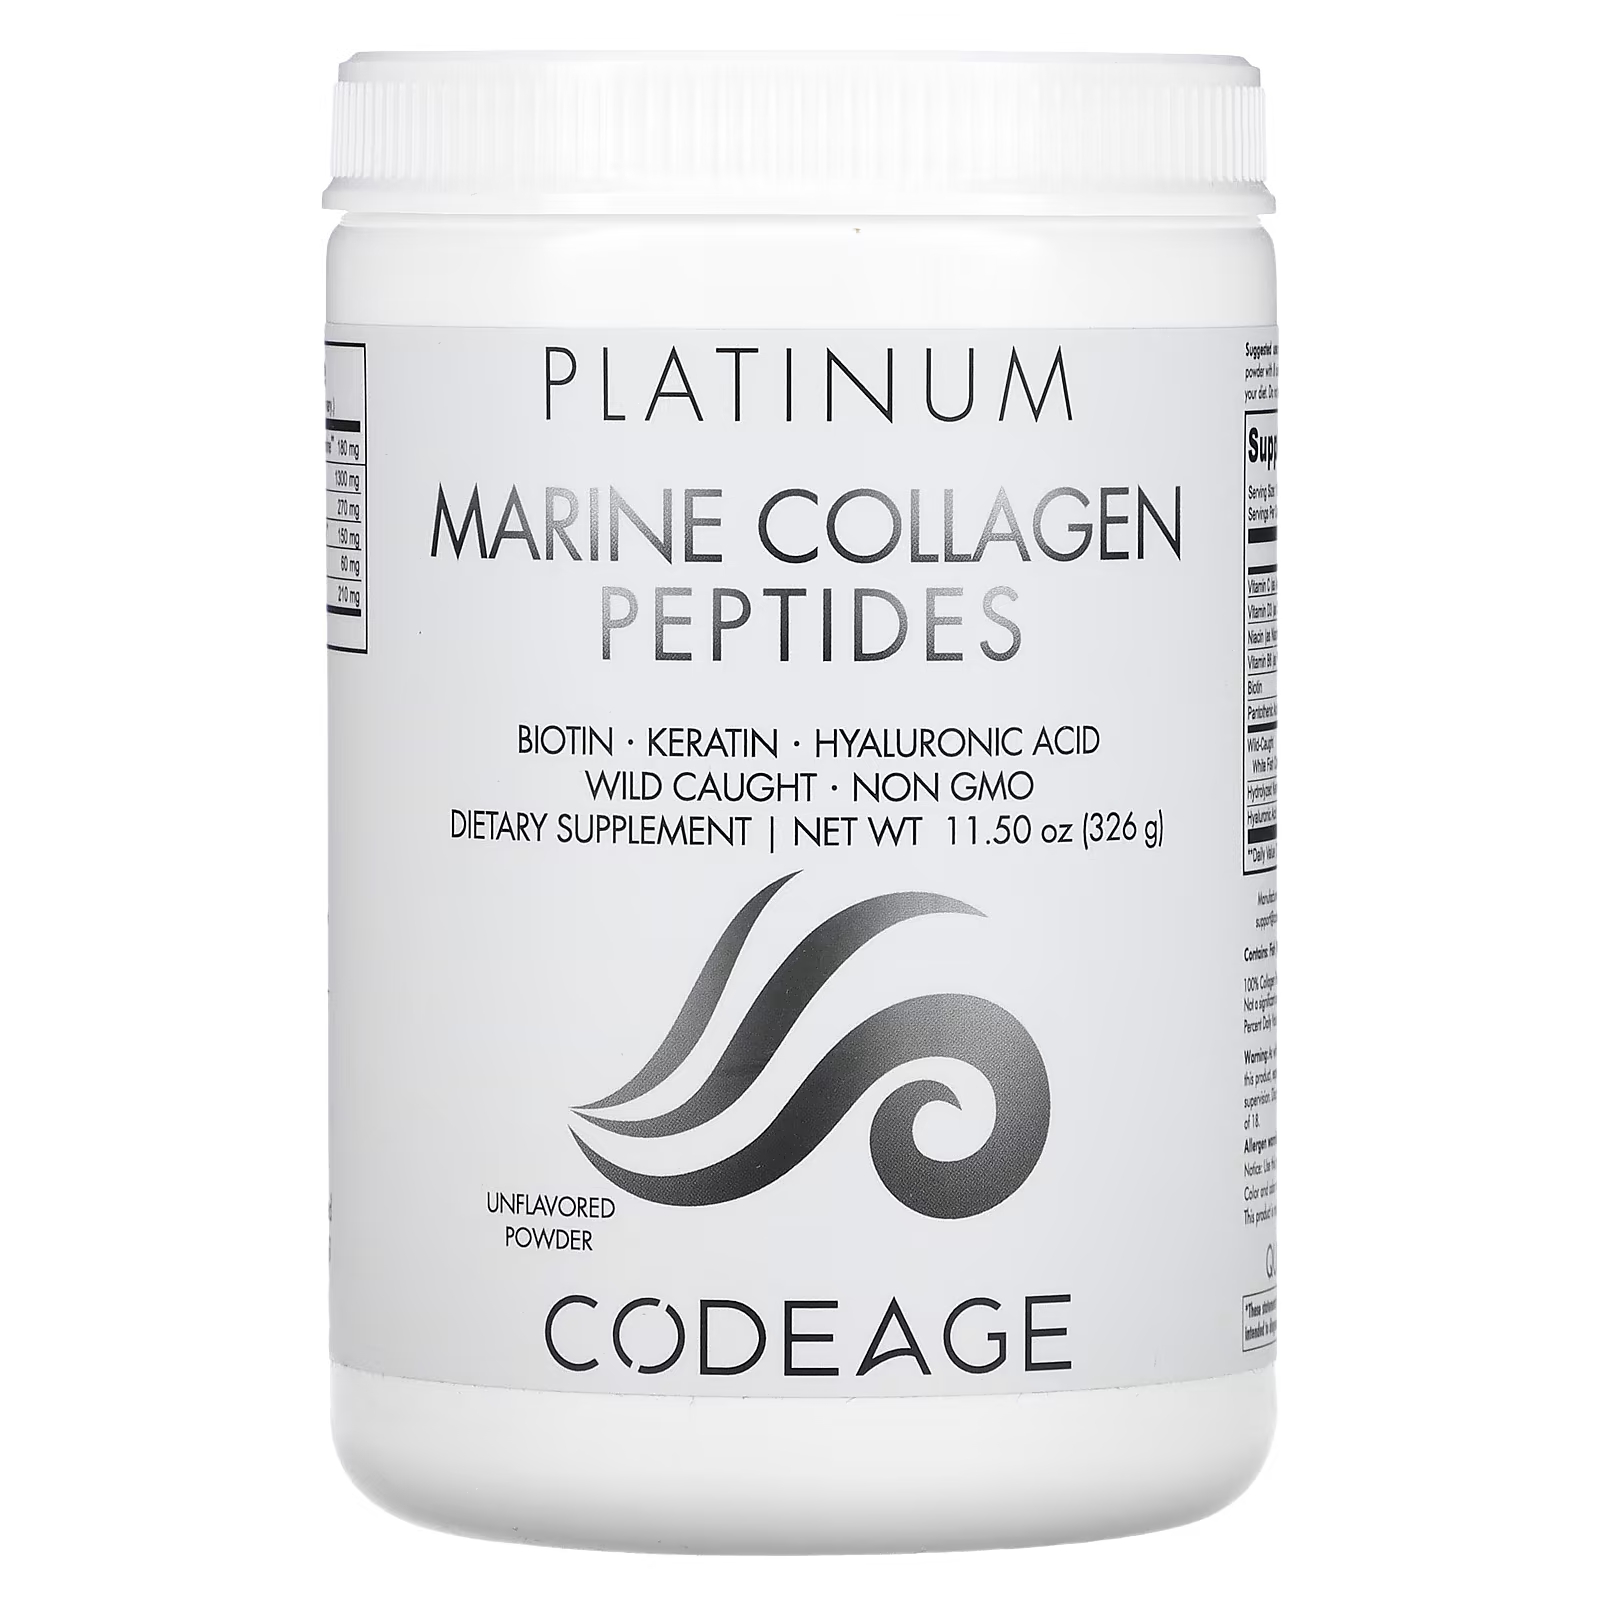 Пищевая добавка Codeage Platinum пептиды морского коллагена без вкуса, 326г пищевая добавка everydaze essential collagen solution jelly stick персик 10 стиков по 20 г